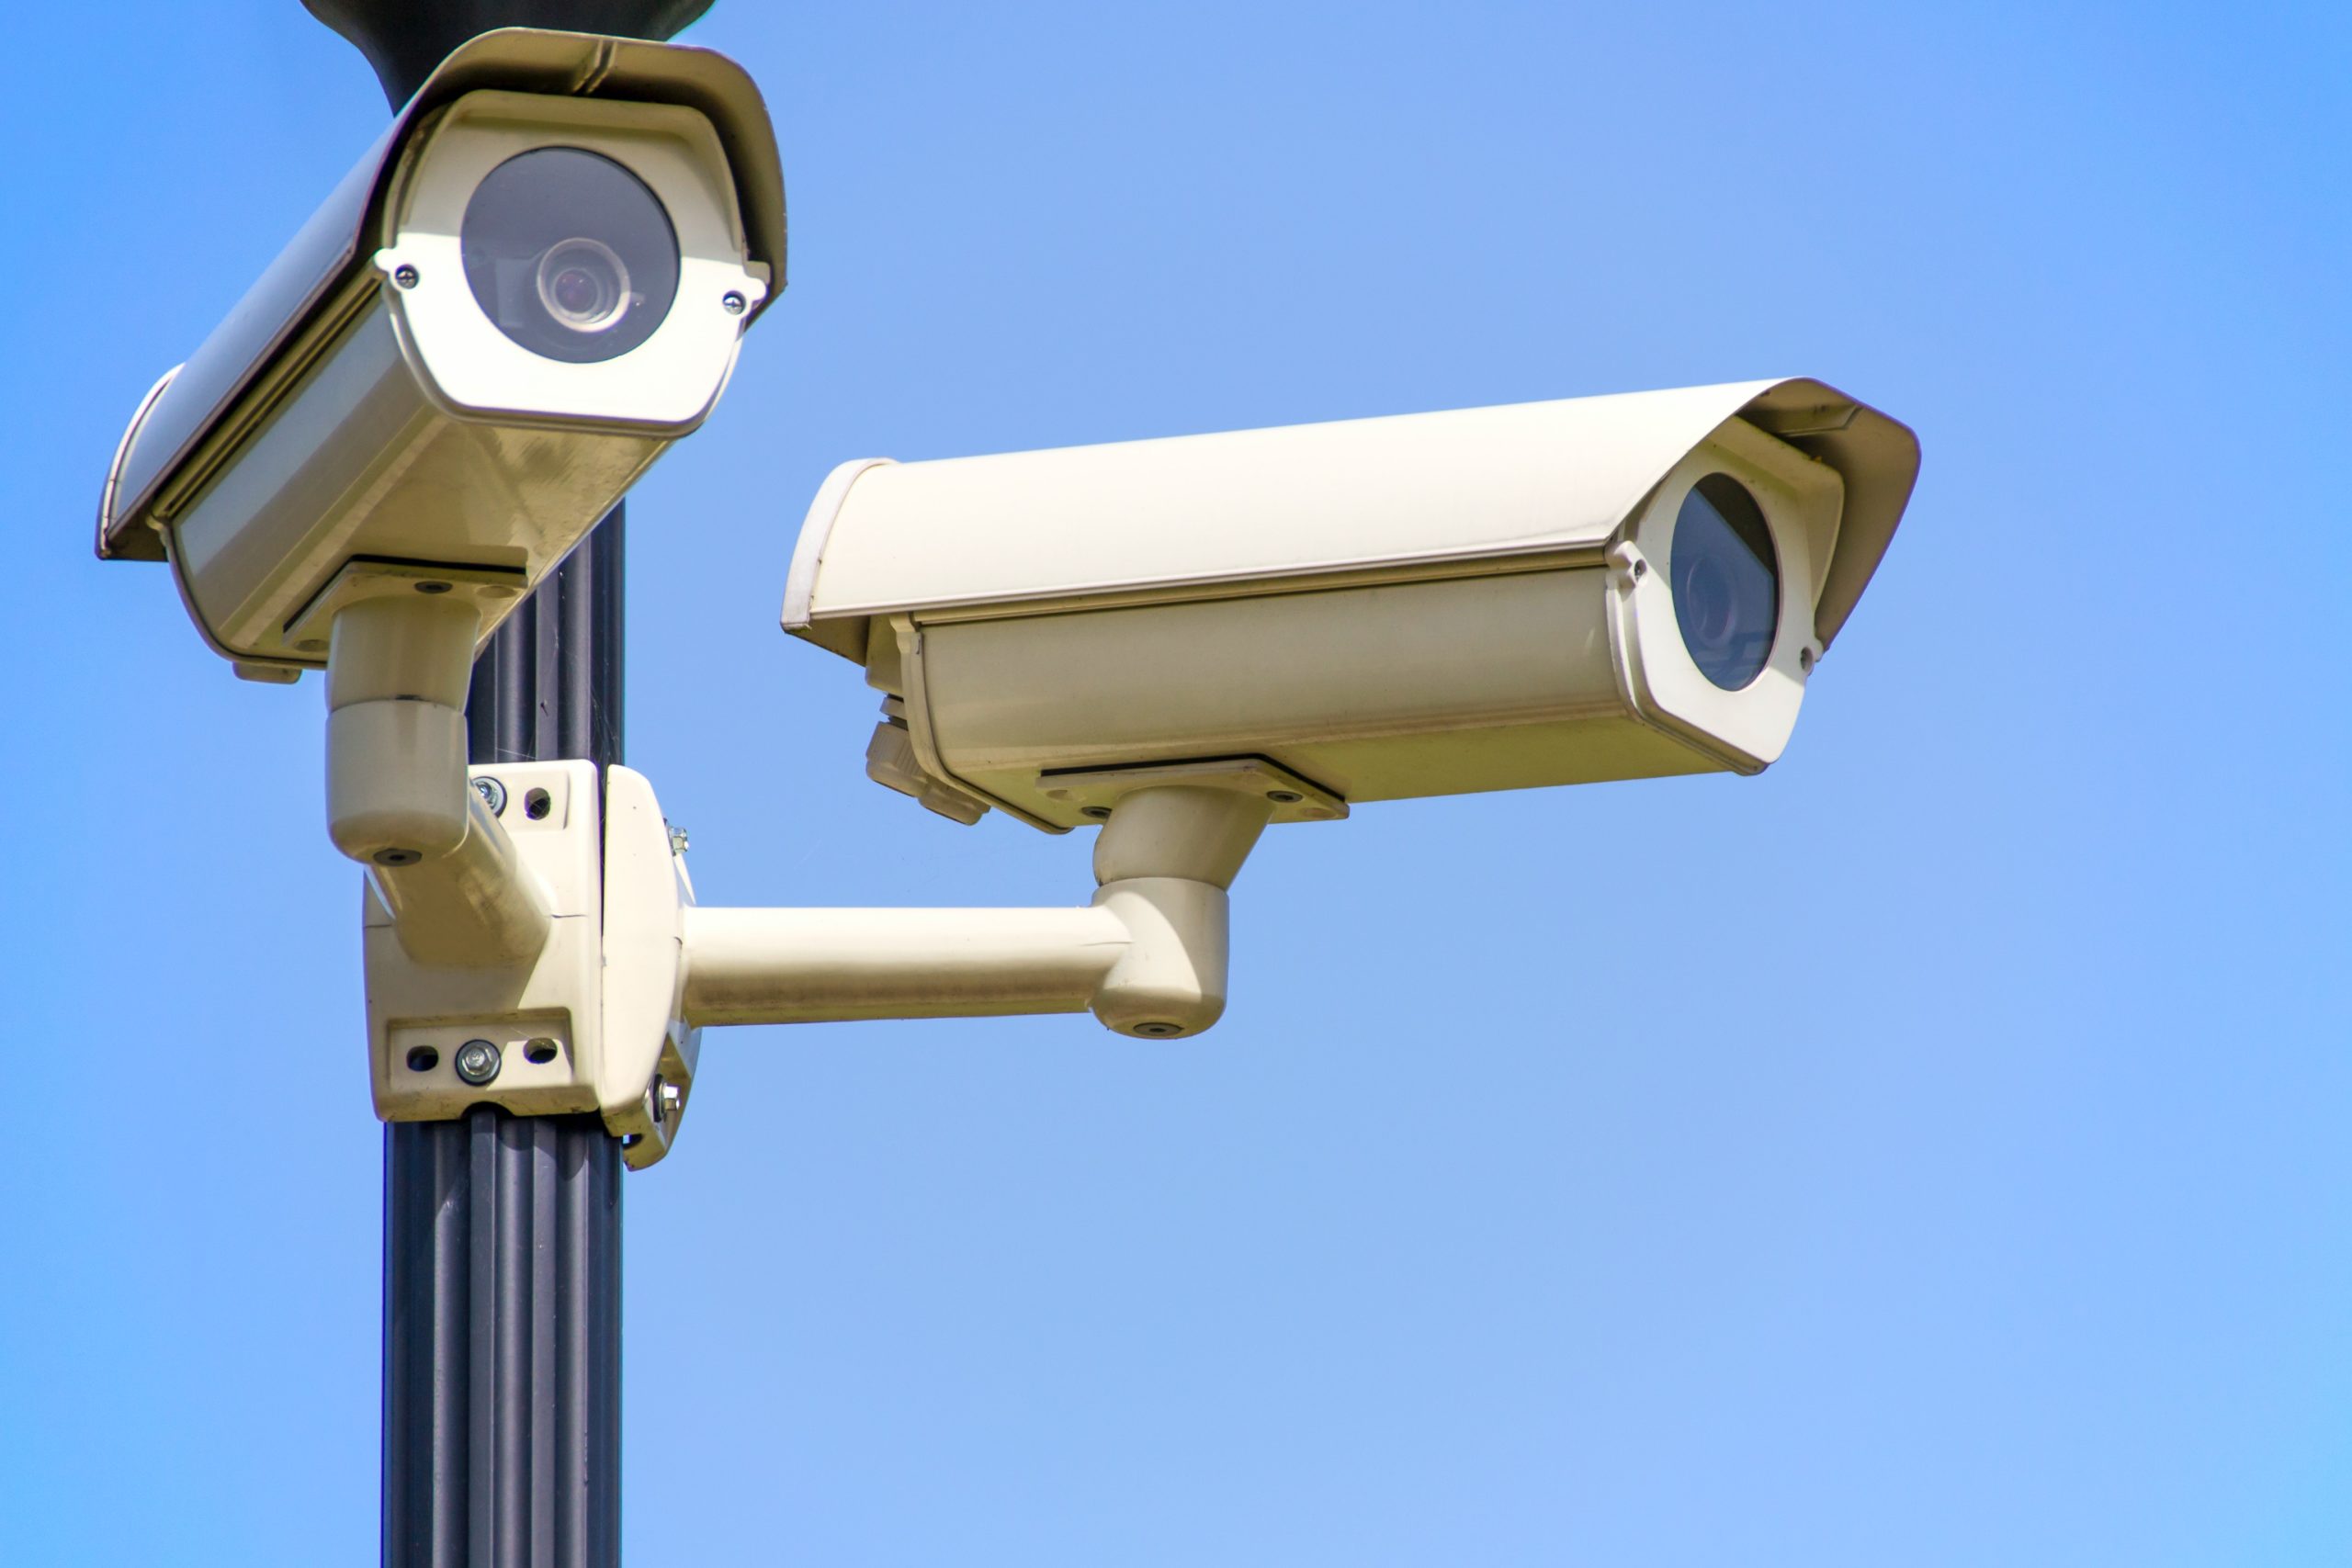 Top Security Cameras Company in Dallas: Security Cameras Dallas